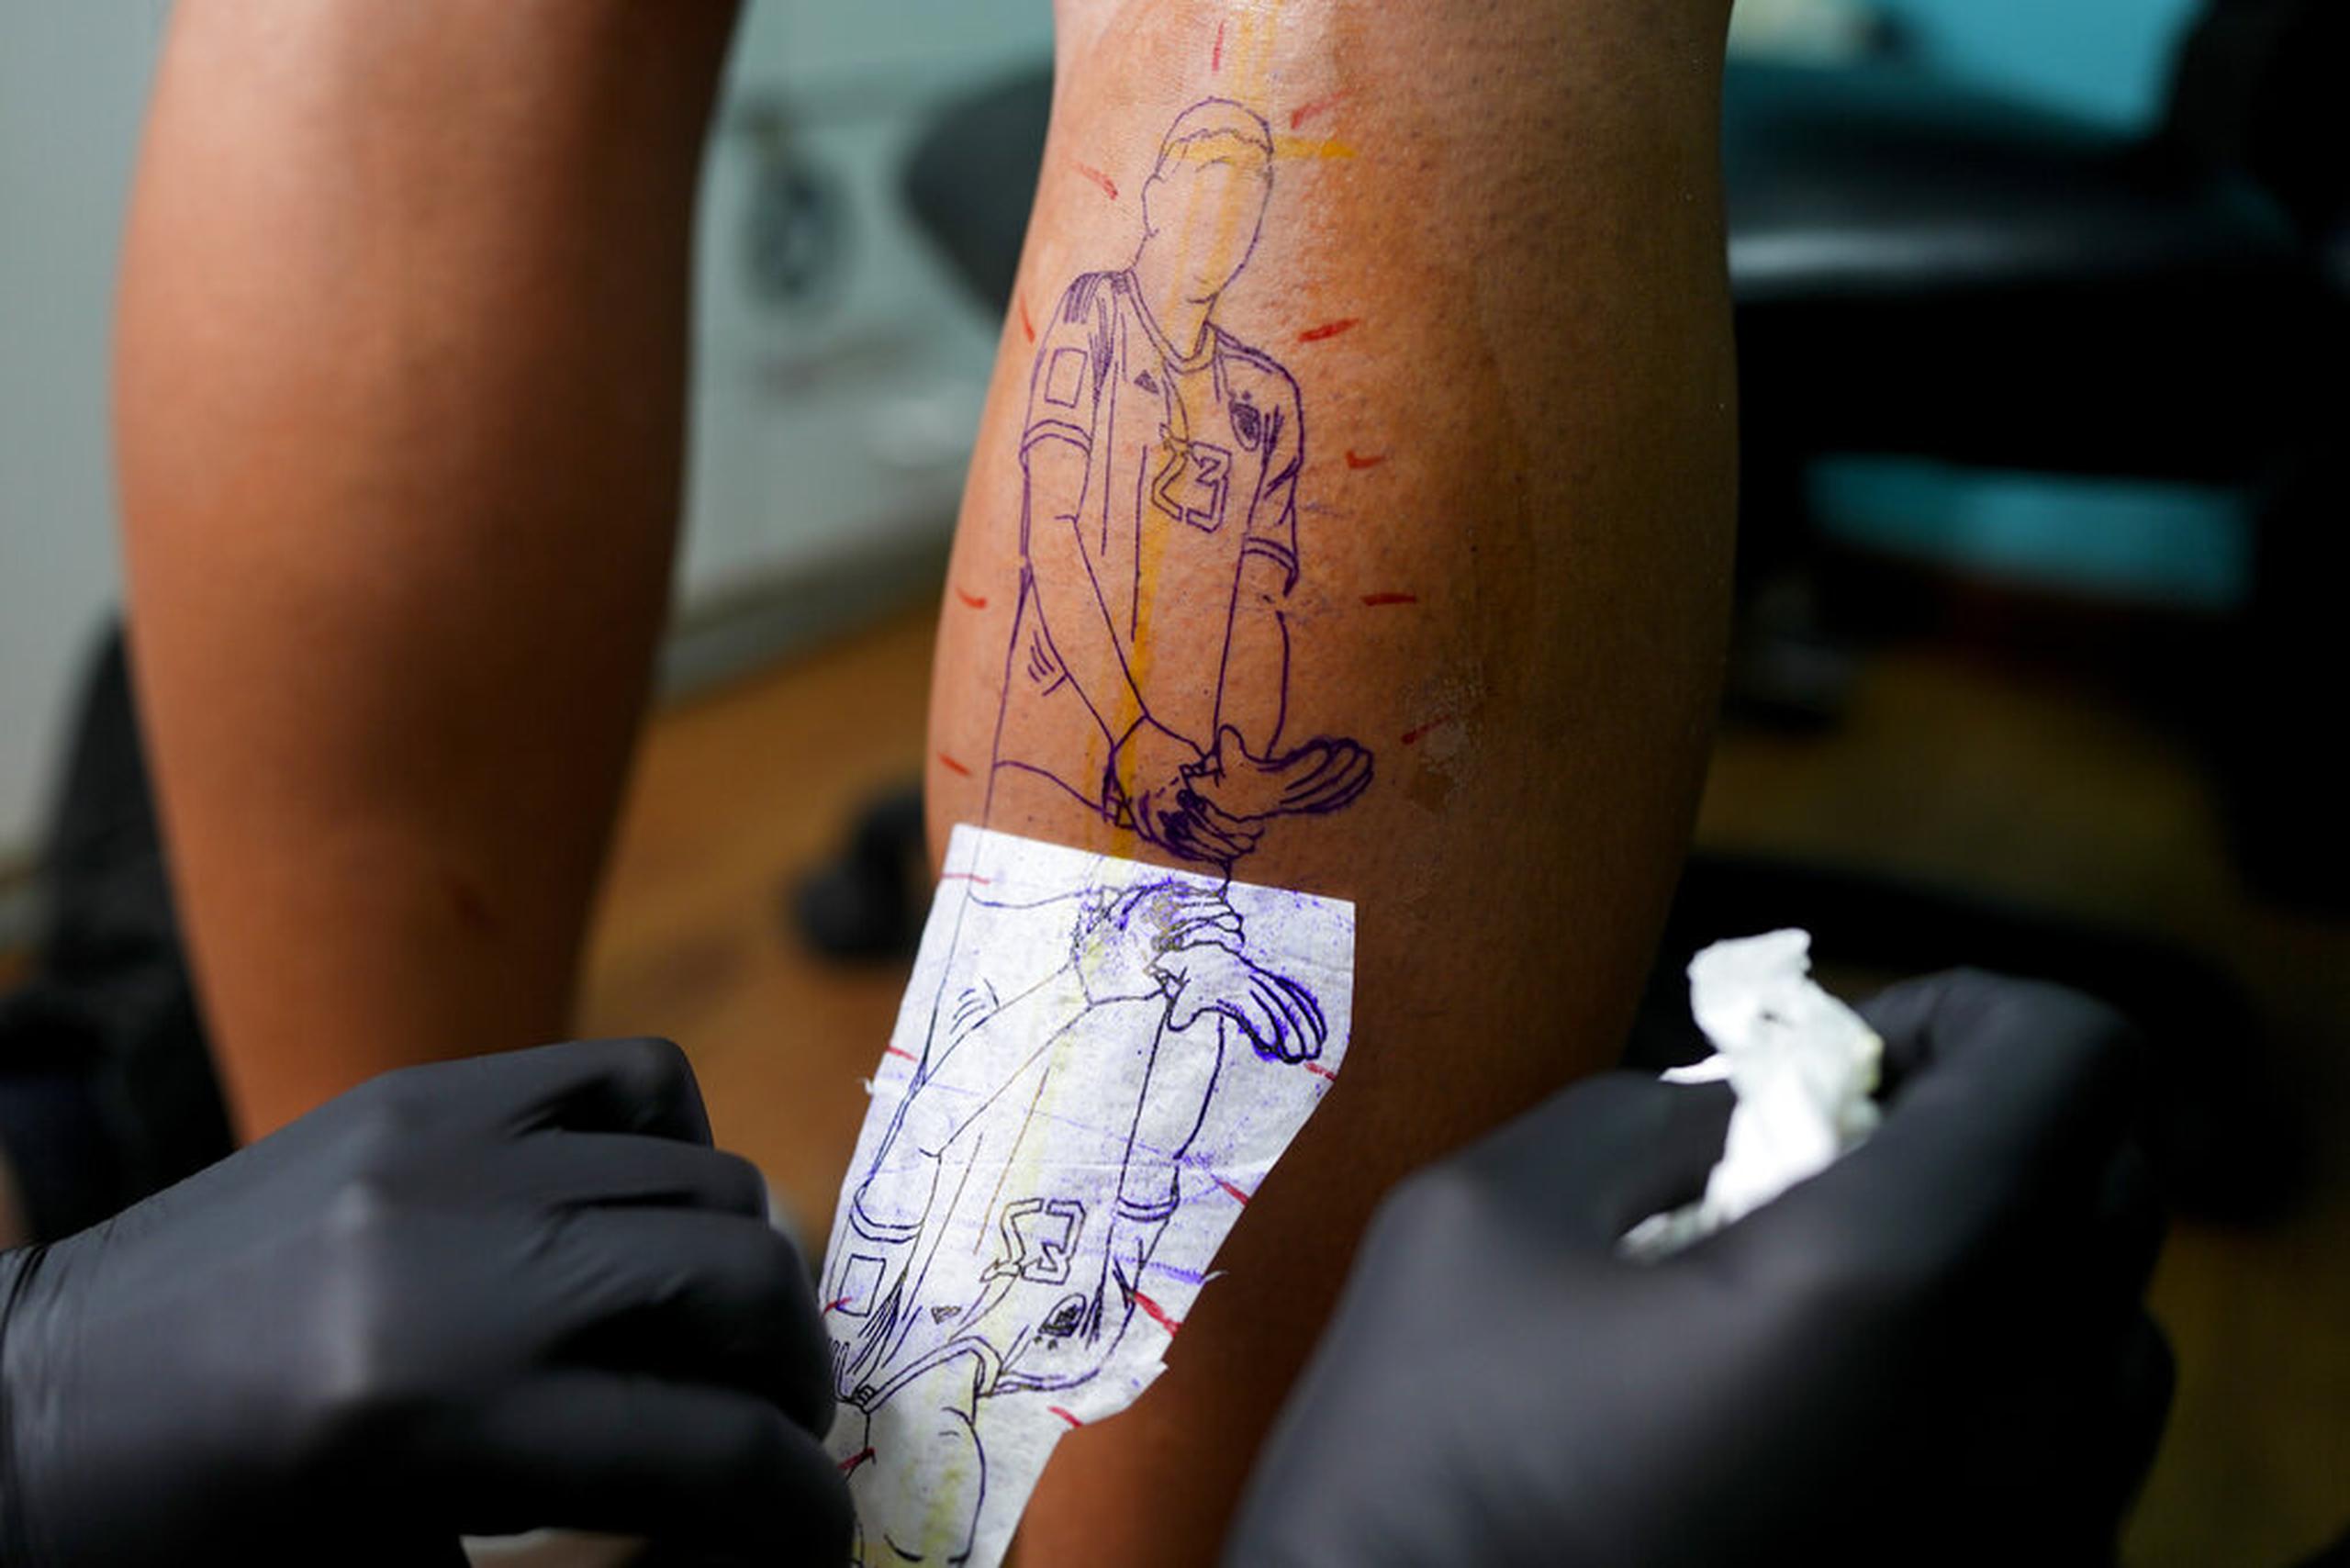 El artista Mariano Finkelstein trabaja en un tatuaje del arquero argentino Emiliano Martínez haciendo un gesto con su trofeo de guante de oro durante la ceremonia de premiación de la Copa del Mundo en Qatar 2022, en el cliente Valentin Bobadilla en Buenos Aires, Argentina.